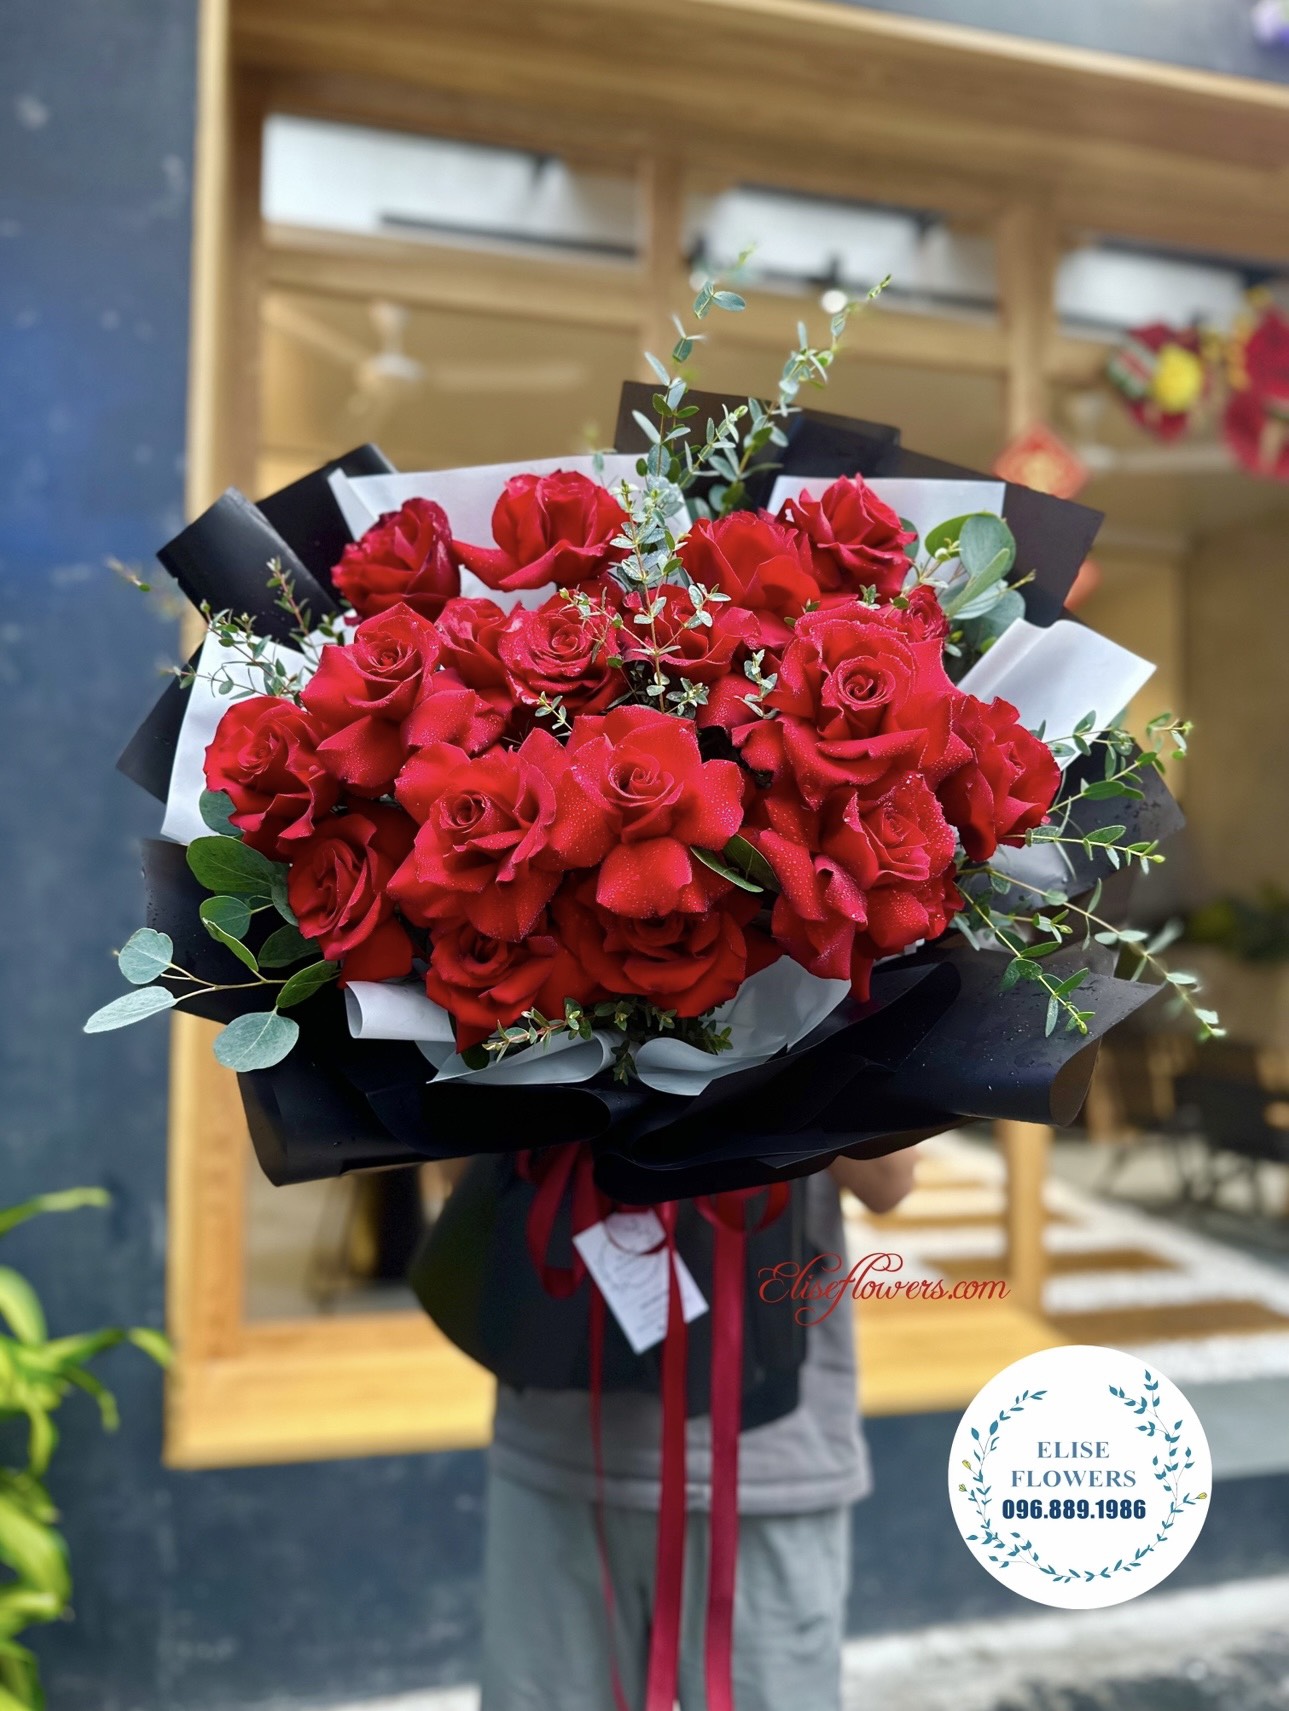 Bó hoa hồng đỏ nhập khẩu Ecuador tặng vợ ngày 8/3. Bó hoa hồng đỏ đẹp tặng vợ yêu 8/3. Hoa tặng vợ ở Hà Nội.